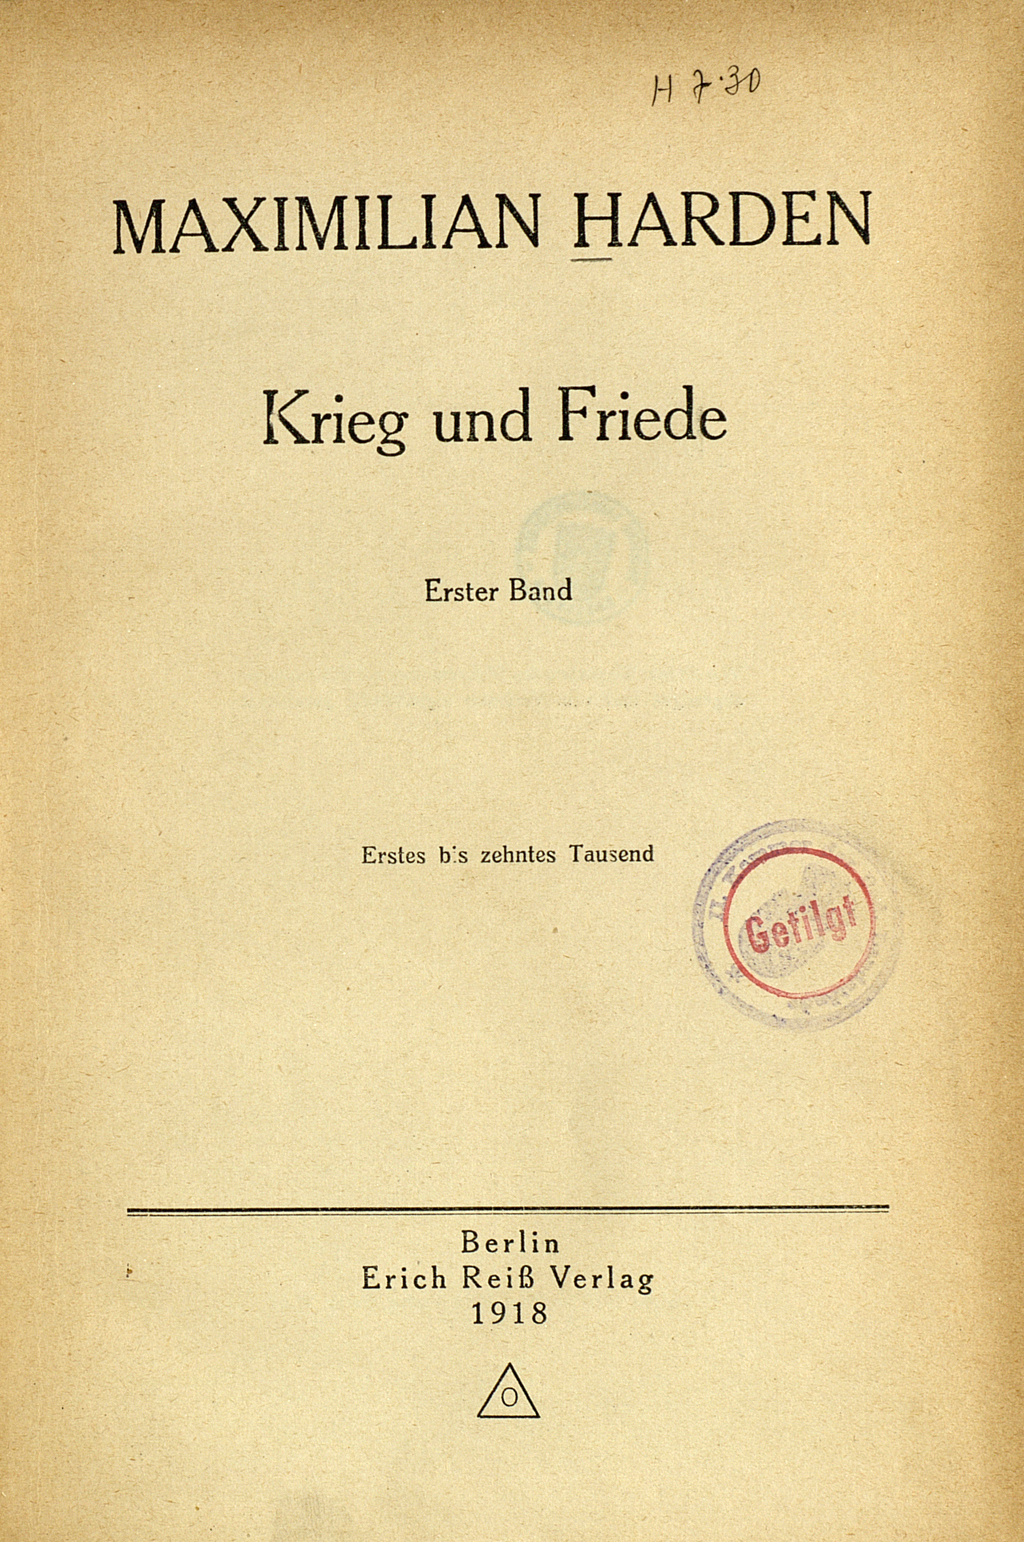 Zu sehen ist das schmucklose Titelblatt des Buches von Maximilian Harden.